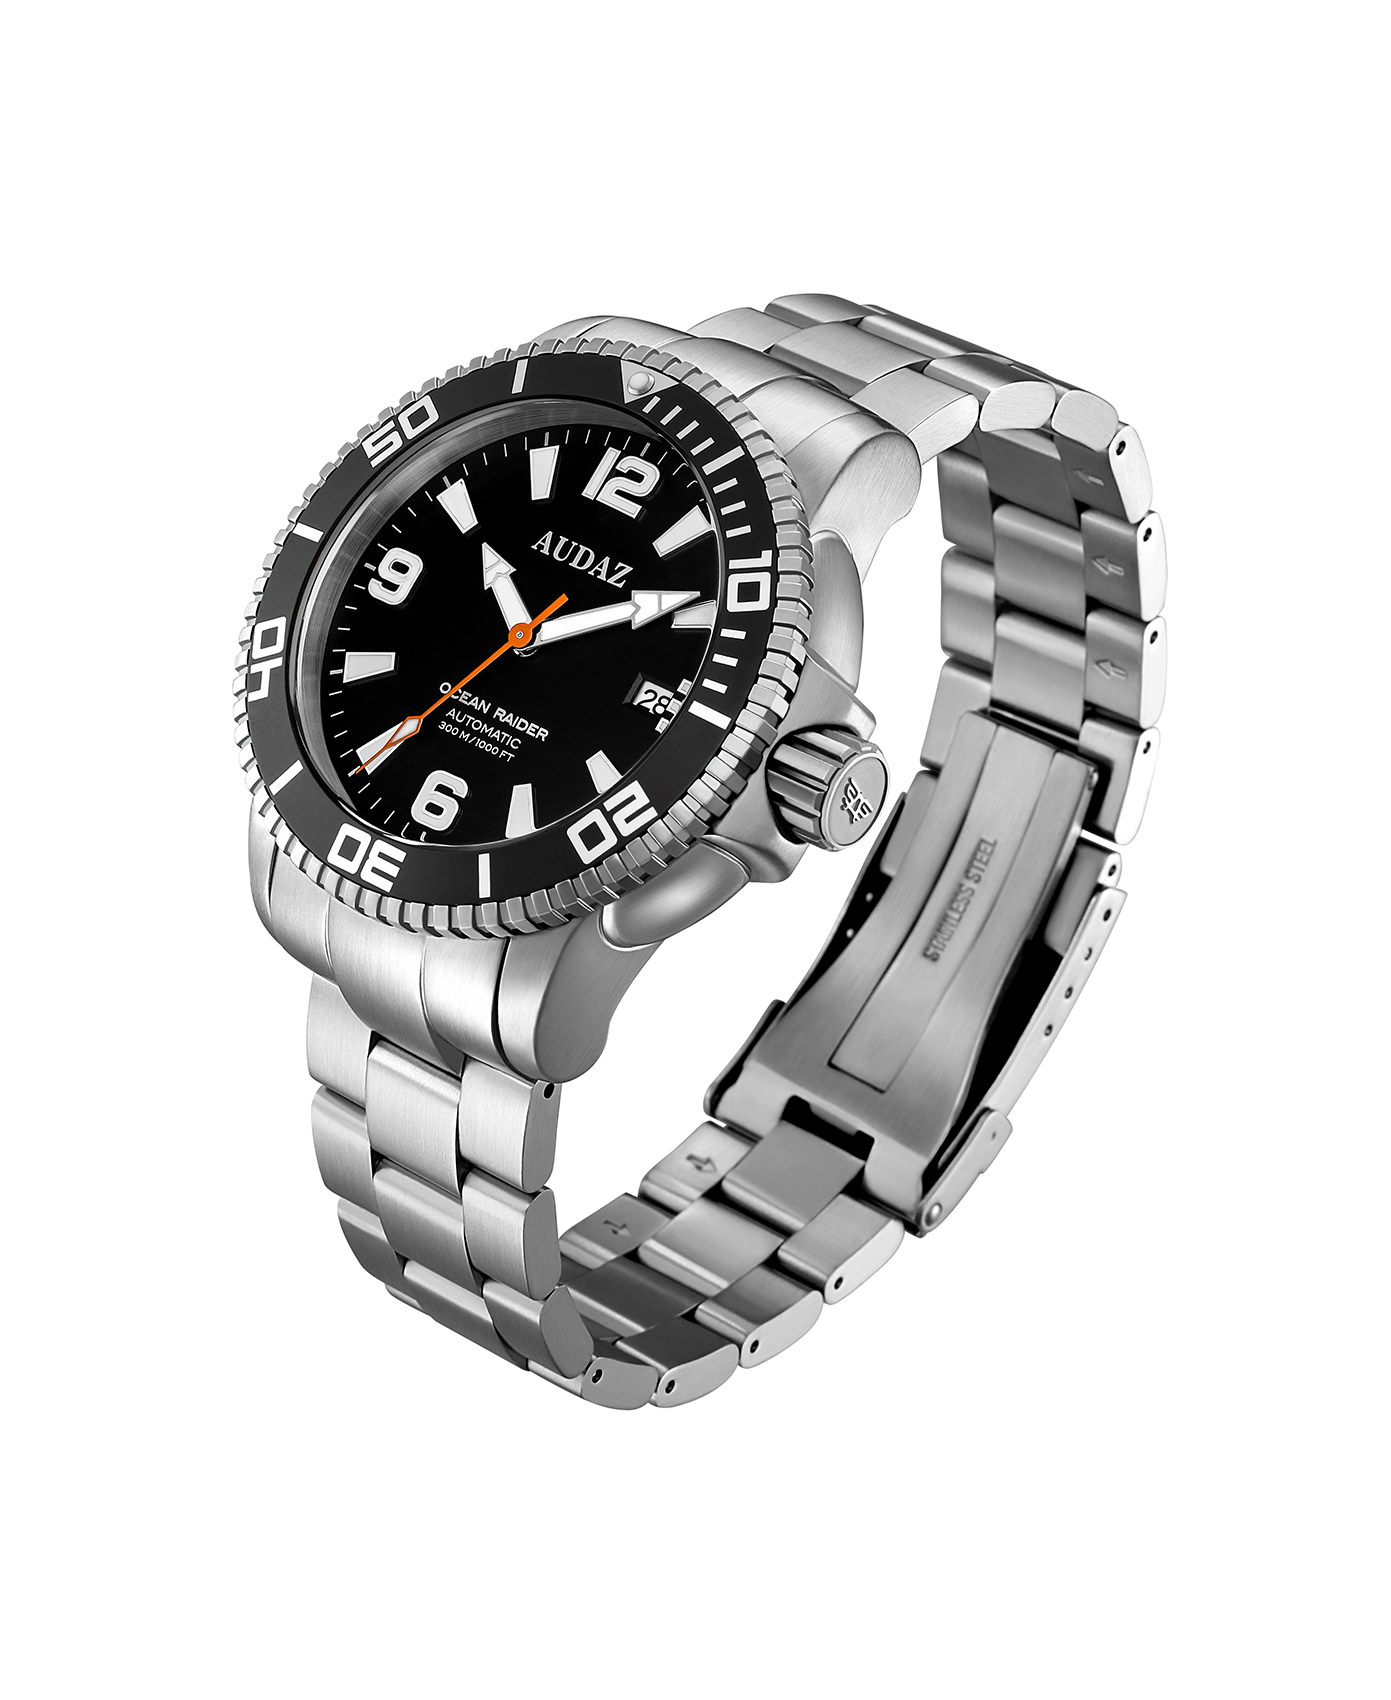 Audaz Ocean Raider Black Dial Men's Diver Automatic Watch 45mm ADZ-2060-01 - Click Image to Close